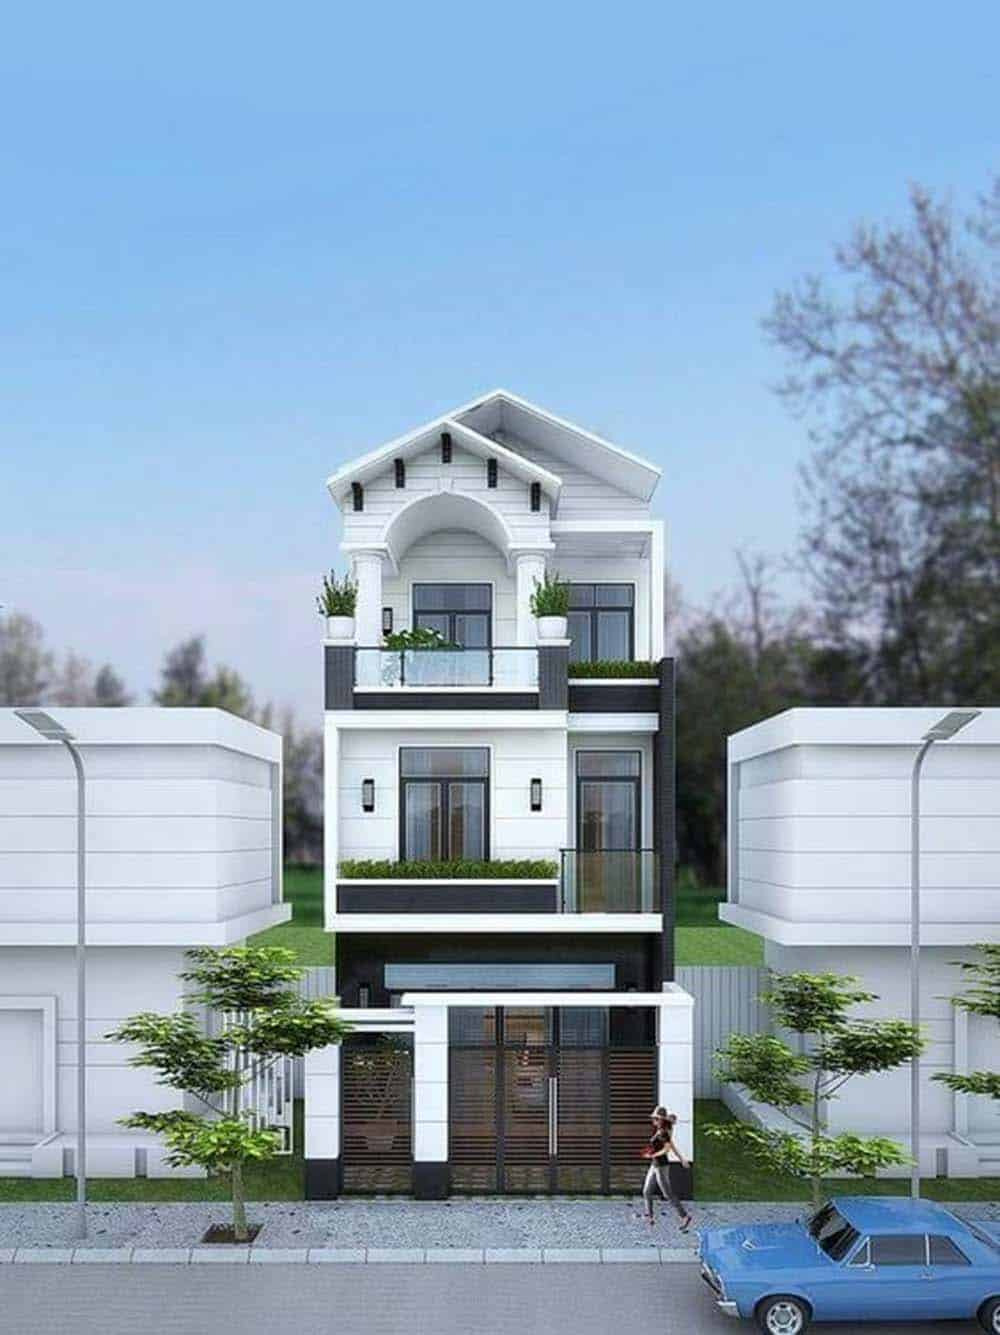 Tổng thể mẫu nhà phố mái tôn 3 tầng sẽ ưu tiên sử dụng gam màu trắng